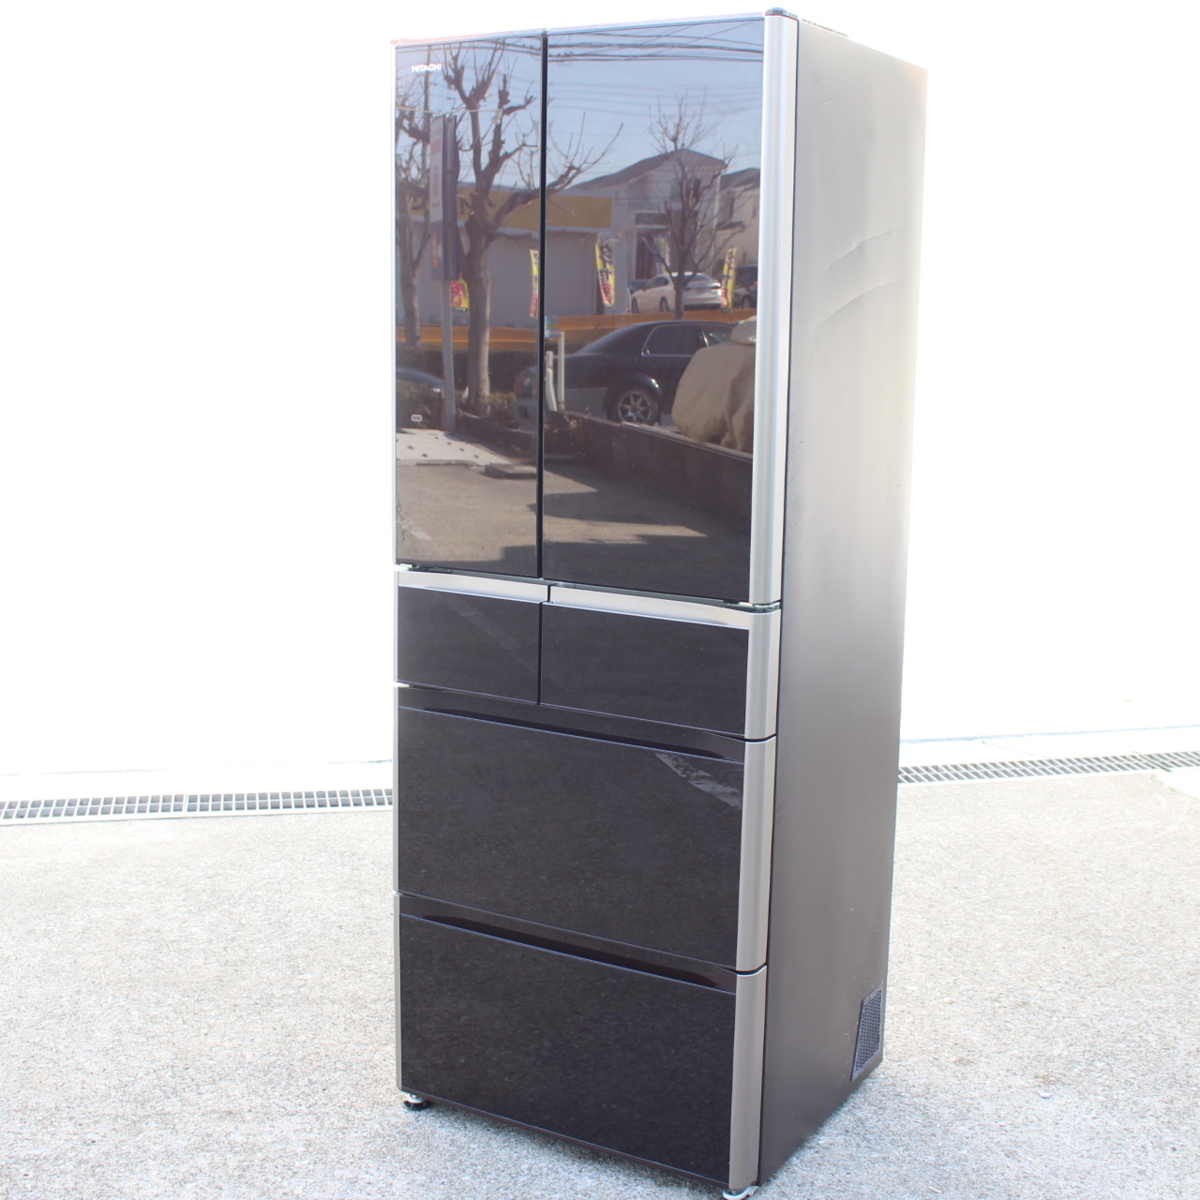 日立 ノンフロン冷凍冷蔵庫 R-G4800E クリスタルブラウン 475L 6ドア 2015年製